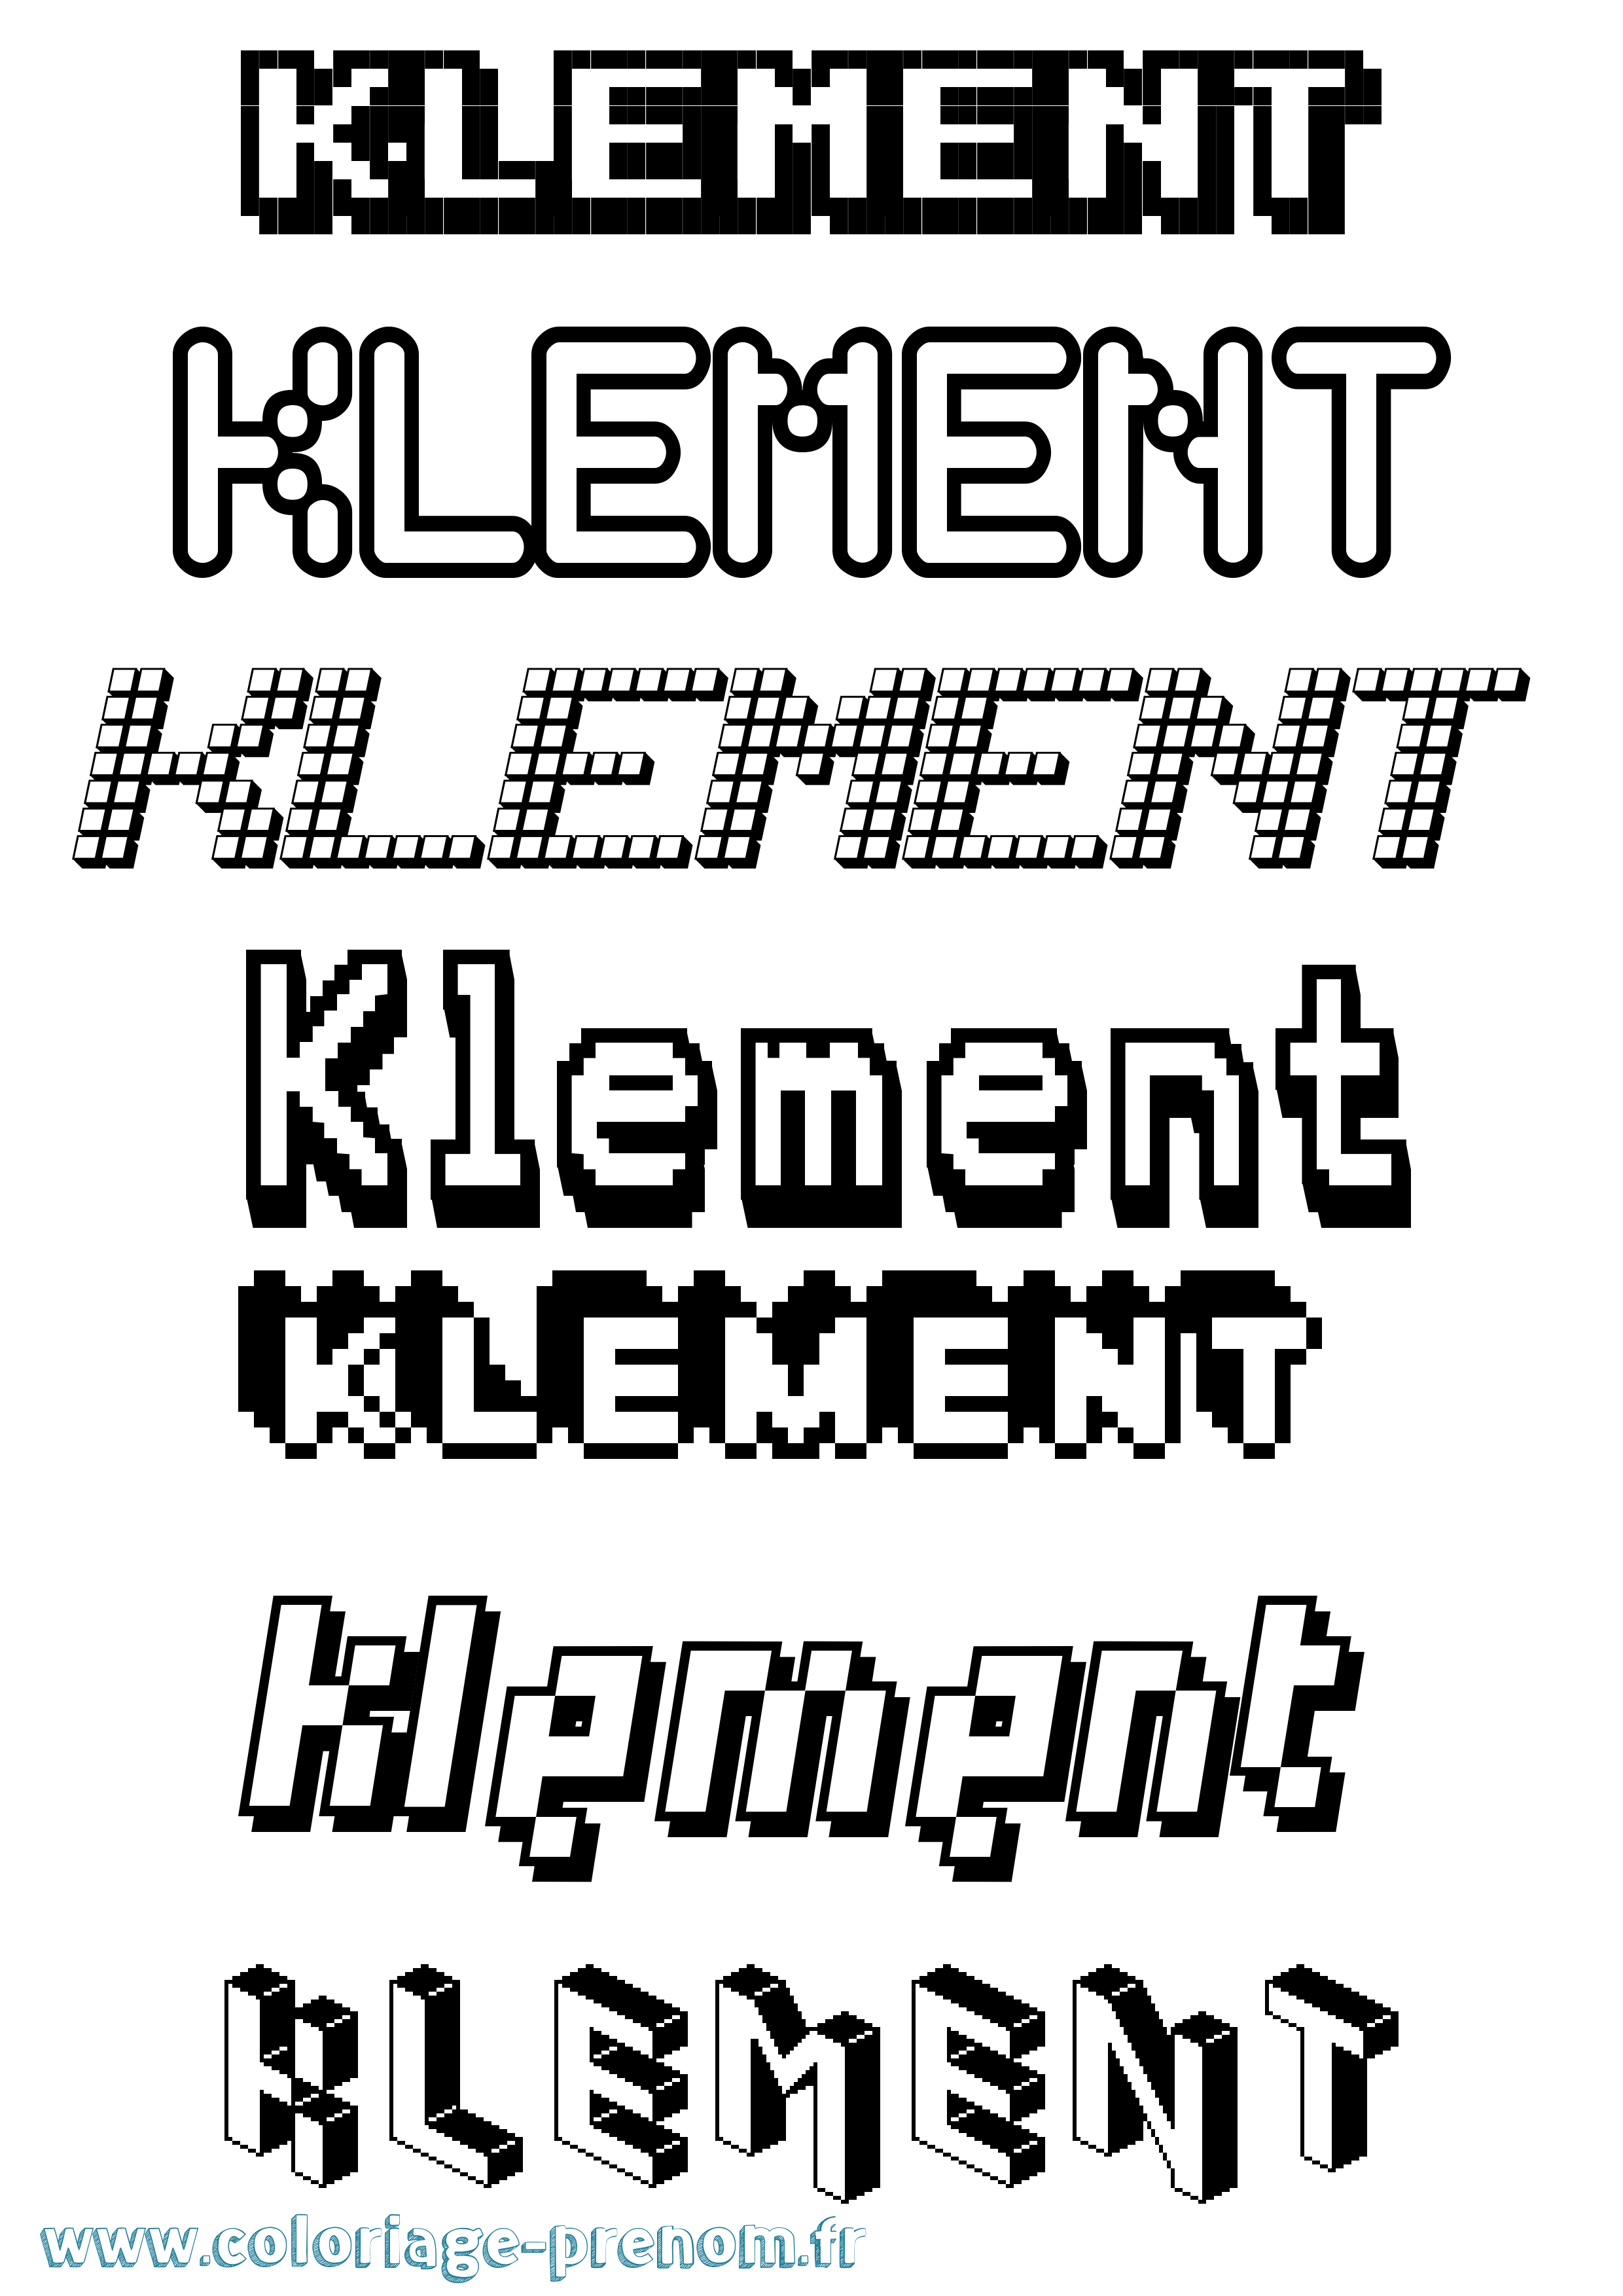 Coloriage prénom Klement Pixel